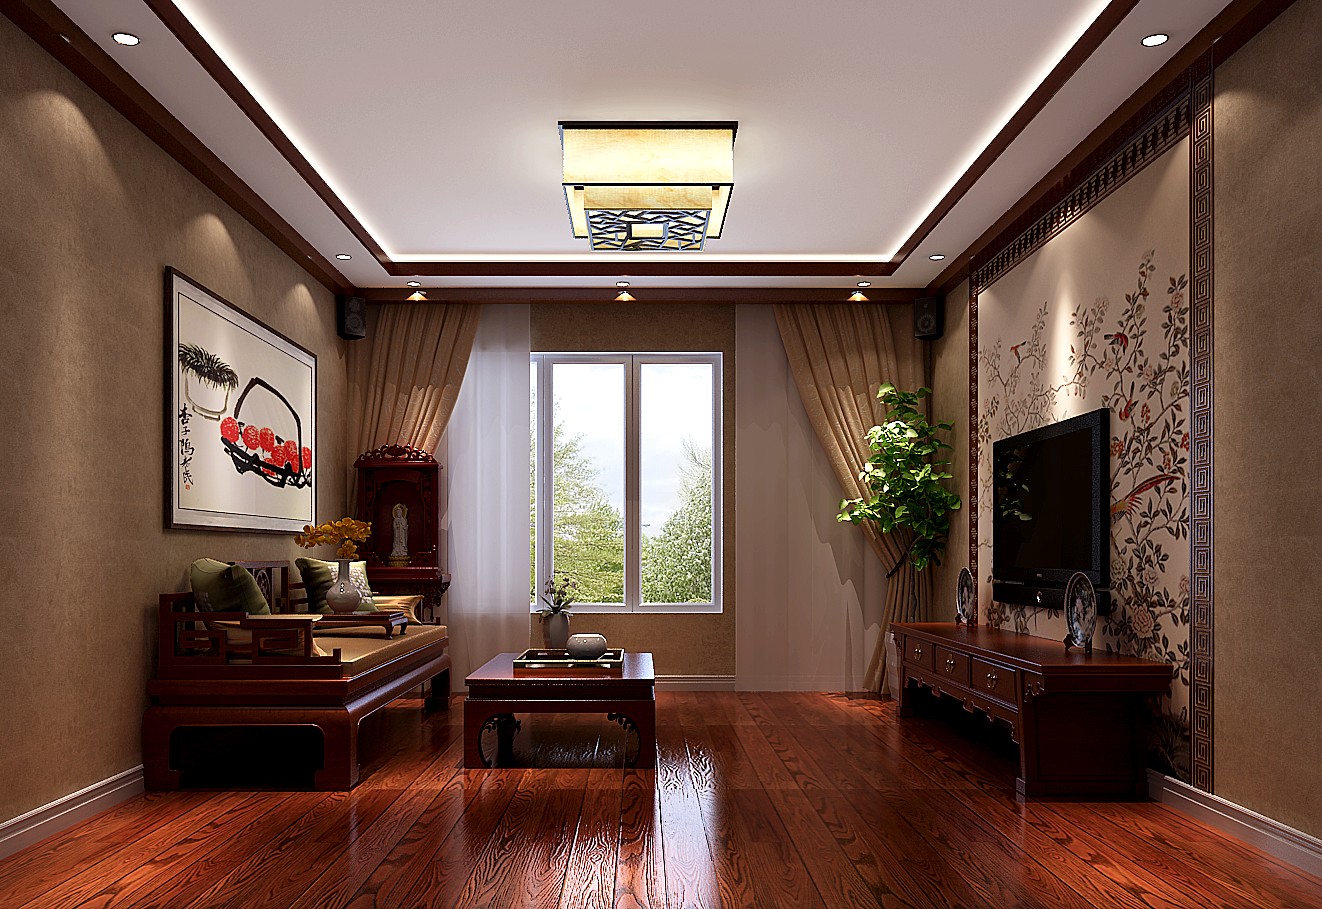 新中式 三居 客厅图片来自高度国际装饰设计集团凌军在四合上院145平米新中式风格的分享